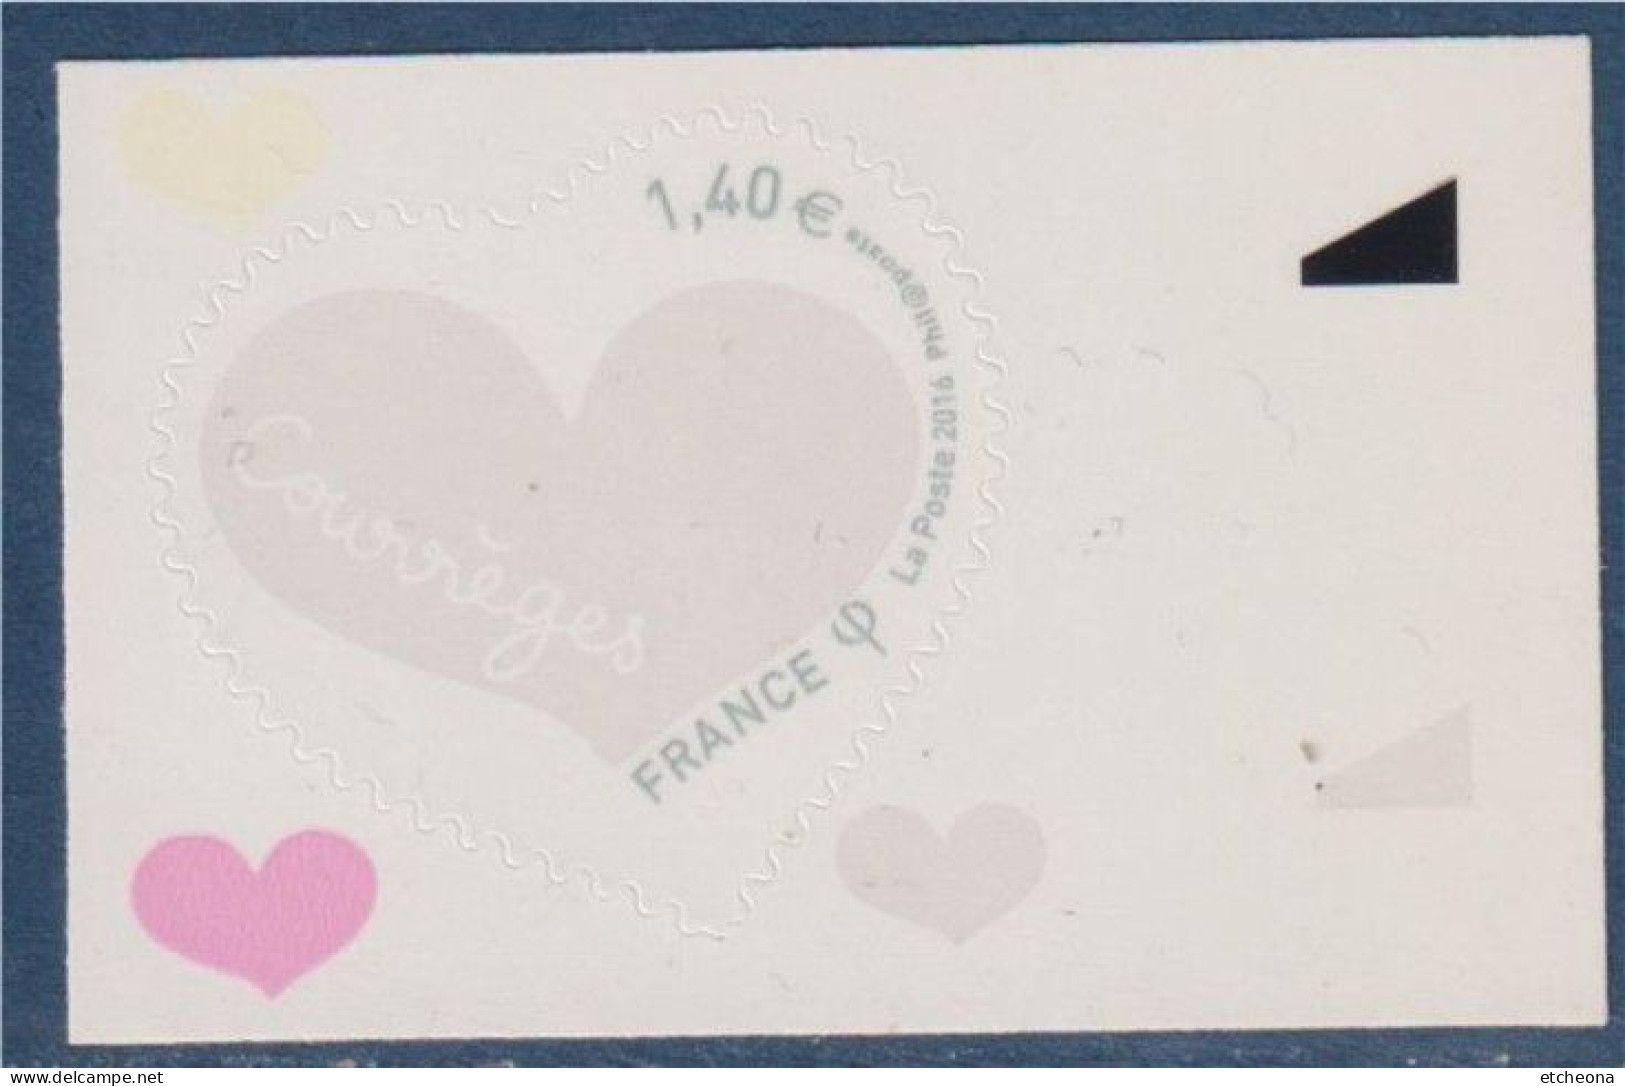 Coeur Saint Valentin 2016 De Courrèges 1.40€ Adhésif Neuf N° 1231 Avec Bord De Feuille - Unused Stamps